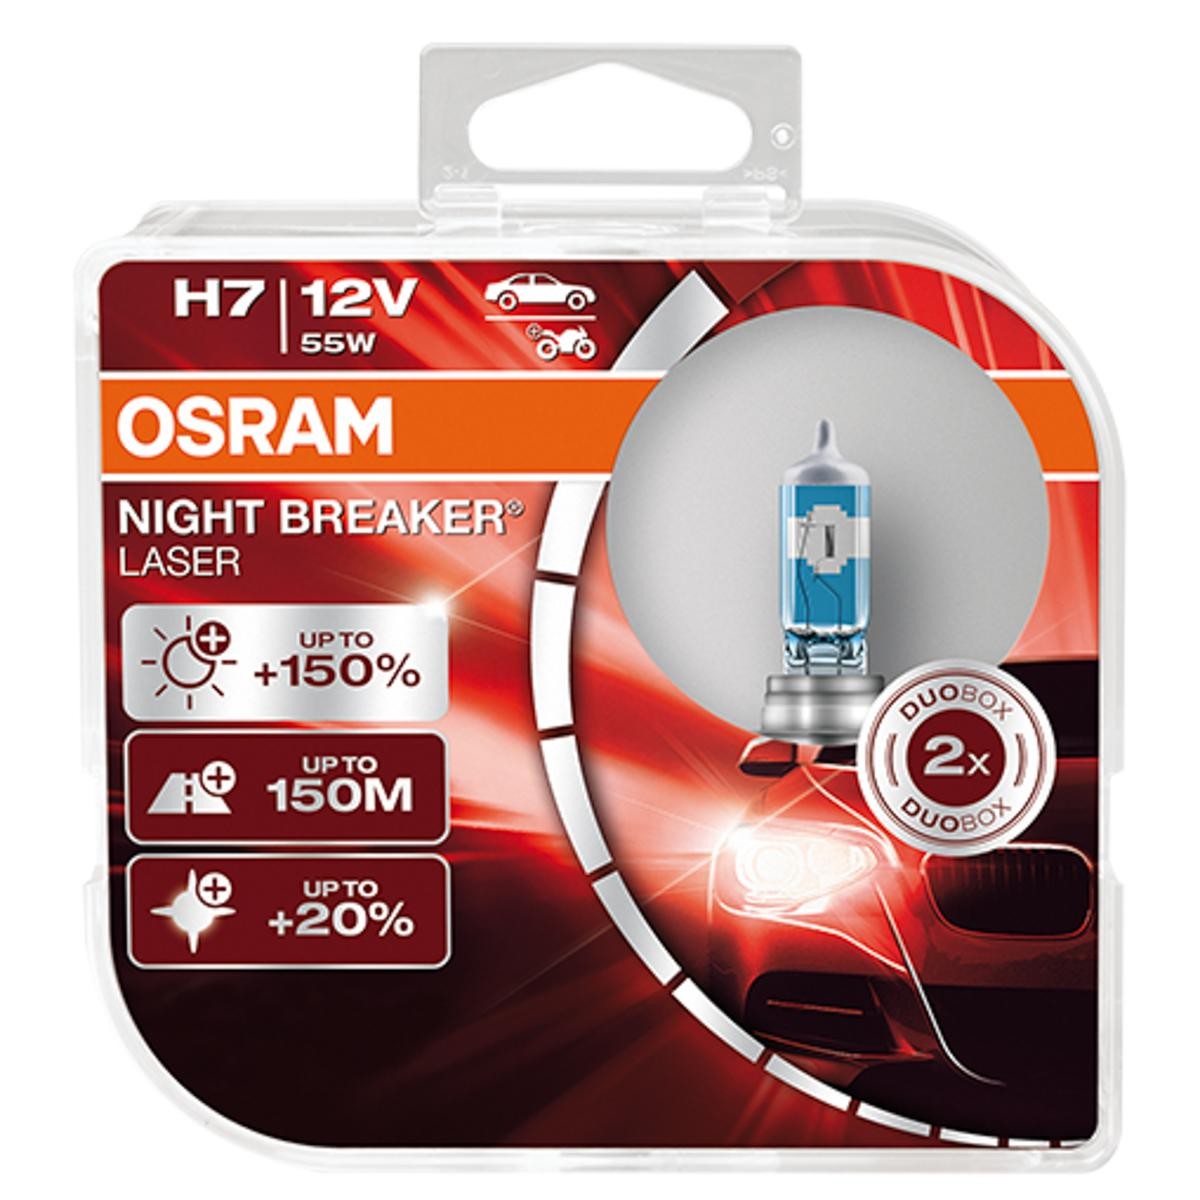 H7 OSRAM H7 12V 55W PX26d 4200K Halogen Glühlampe, Fernscheinwerfer 64210NL-HCB günstig kaufen